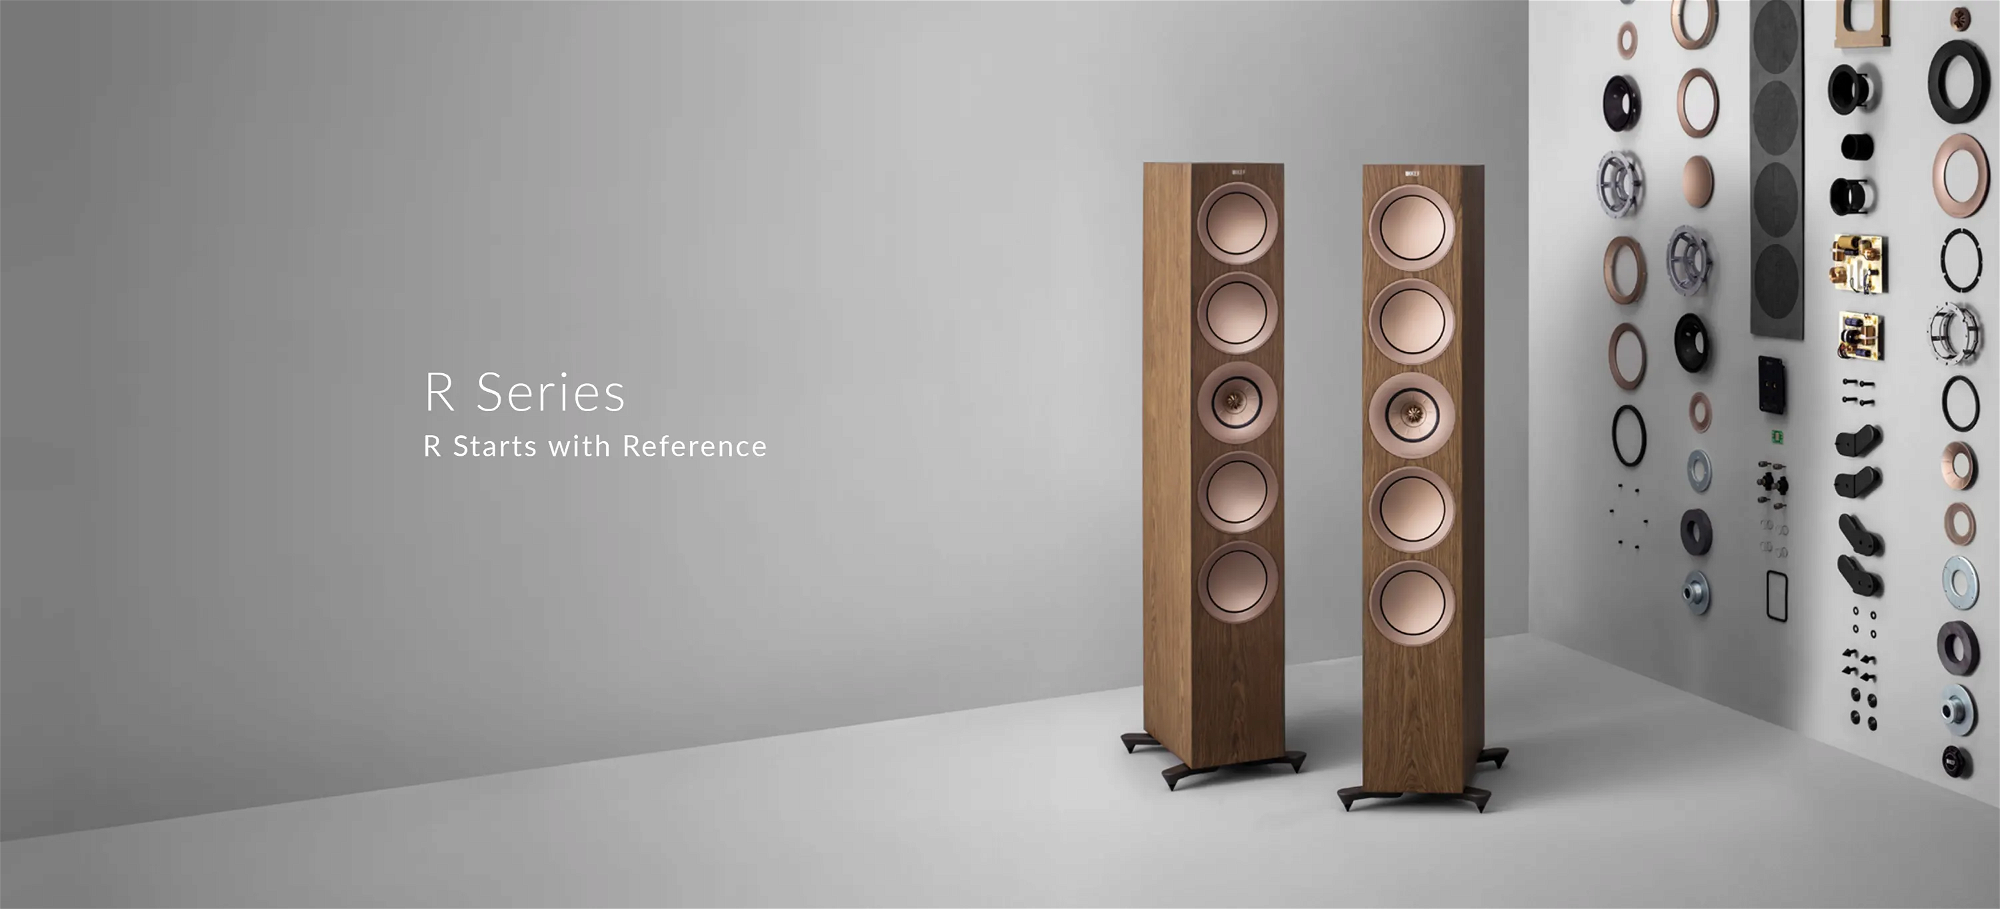 KEF R Series floorstanding bookshelf speakers